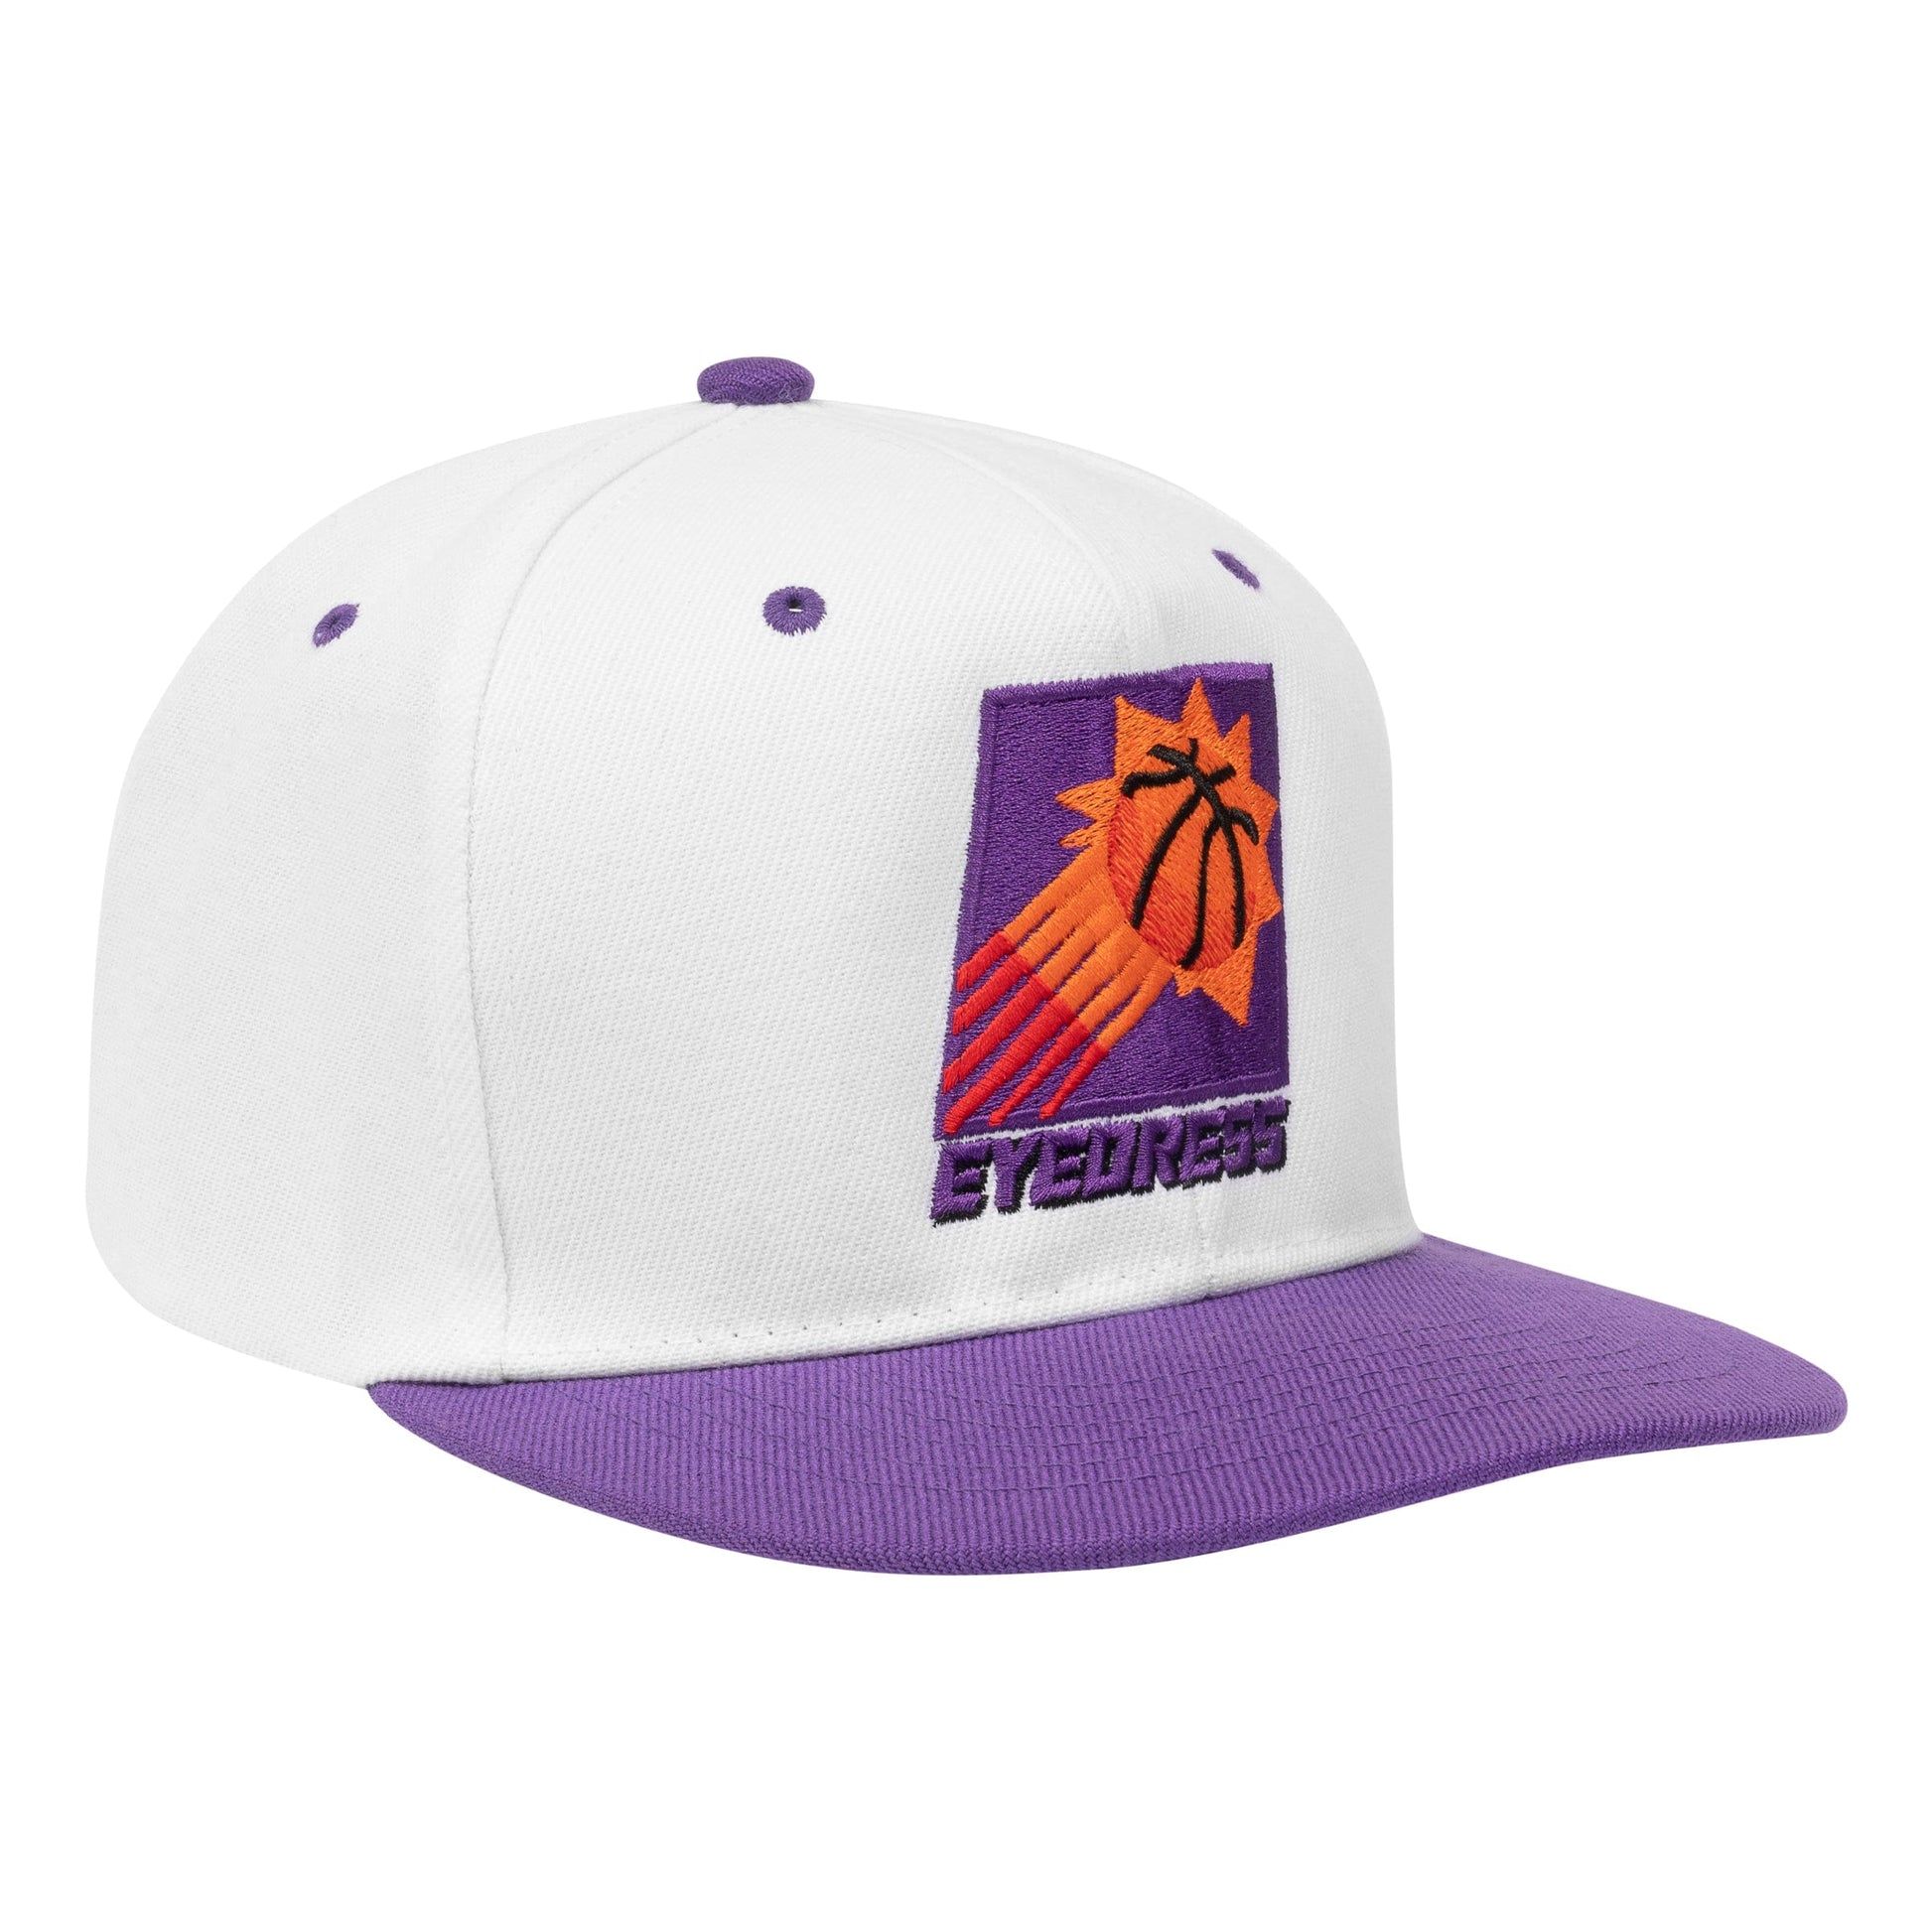 Eyedress Headwear White/Purple SUNS HAT